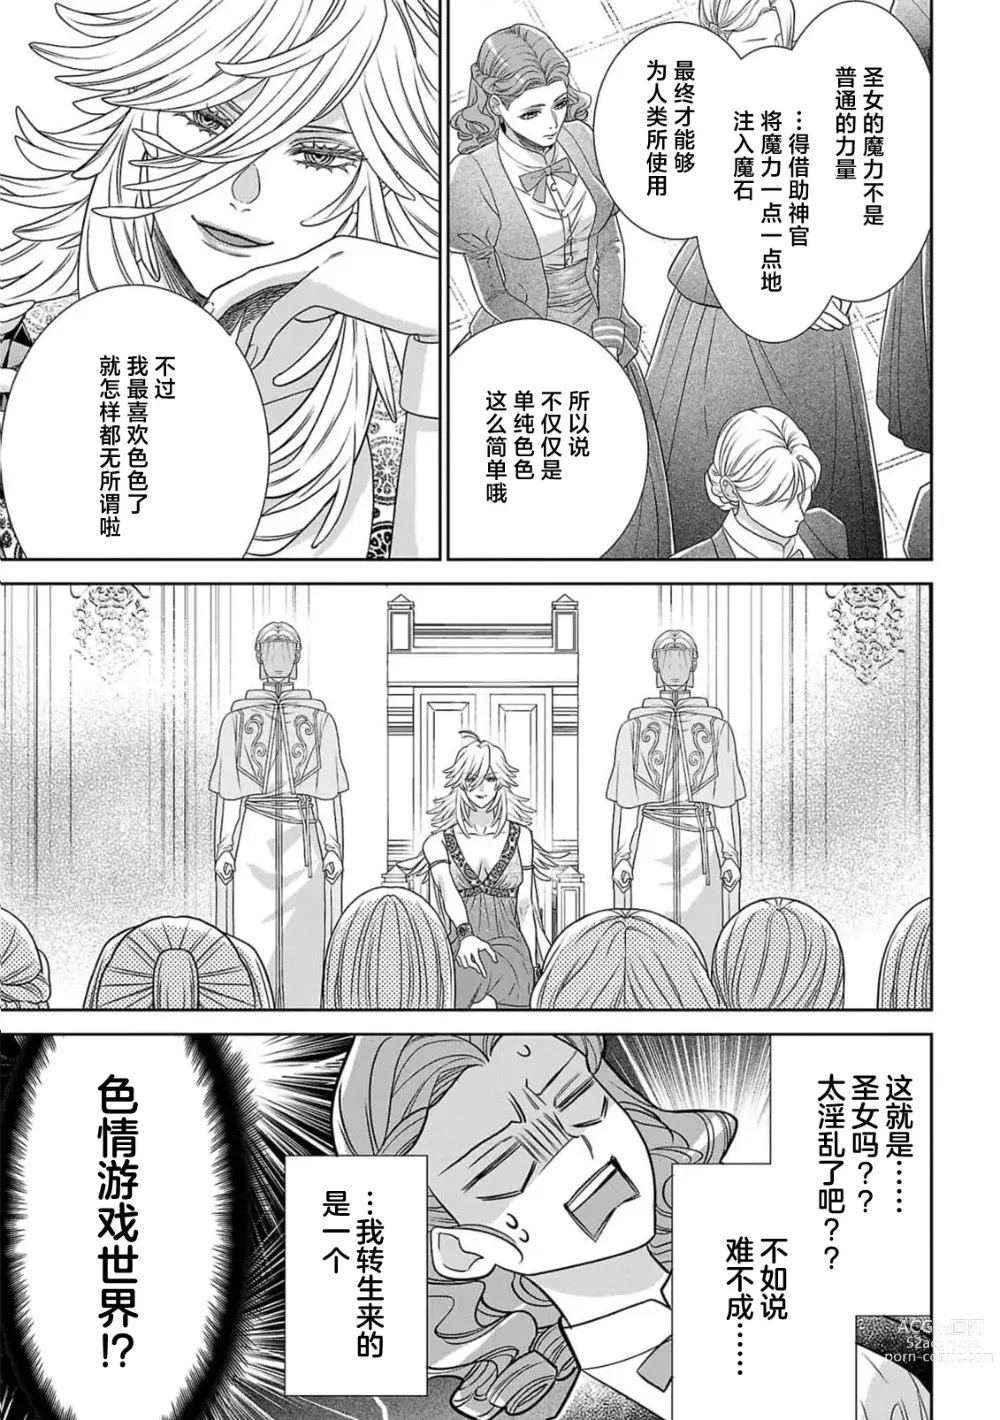 Page 14 of manga 转生圣女和神官还情窦未开 1-4